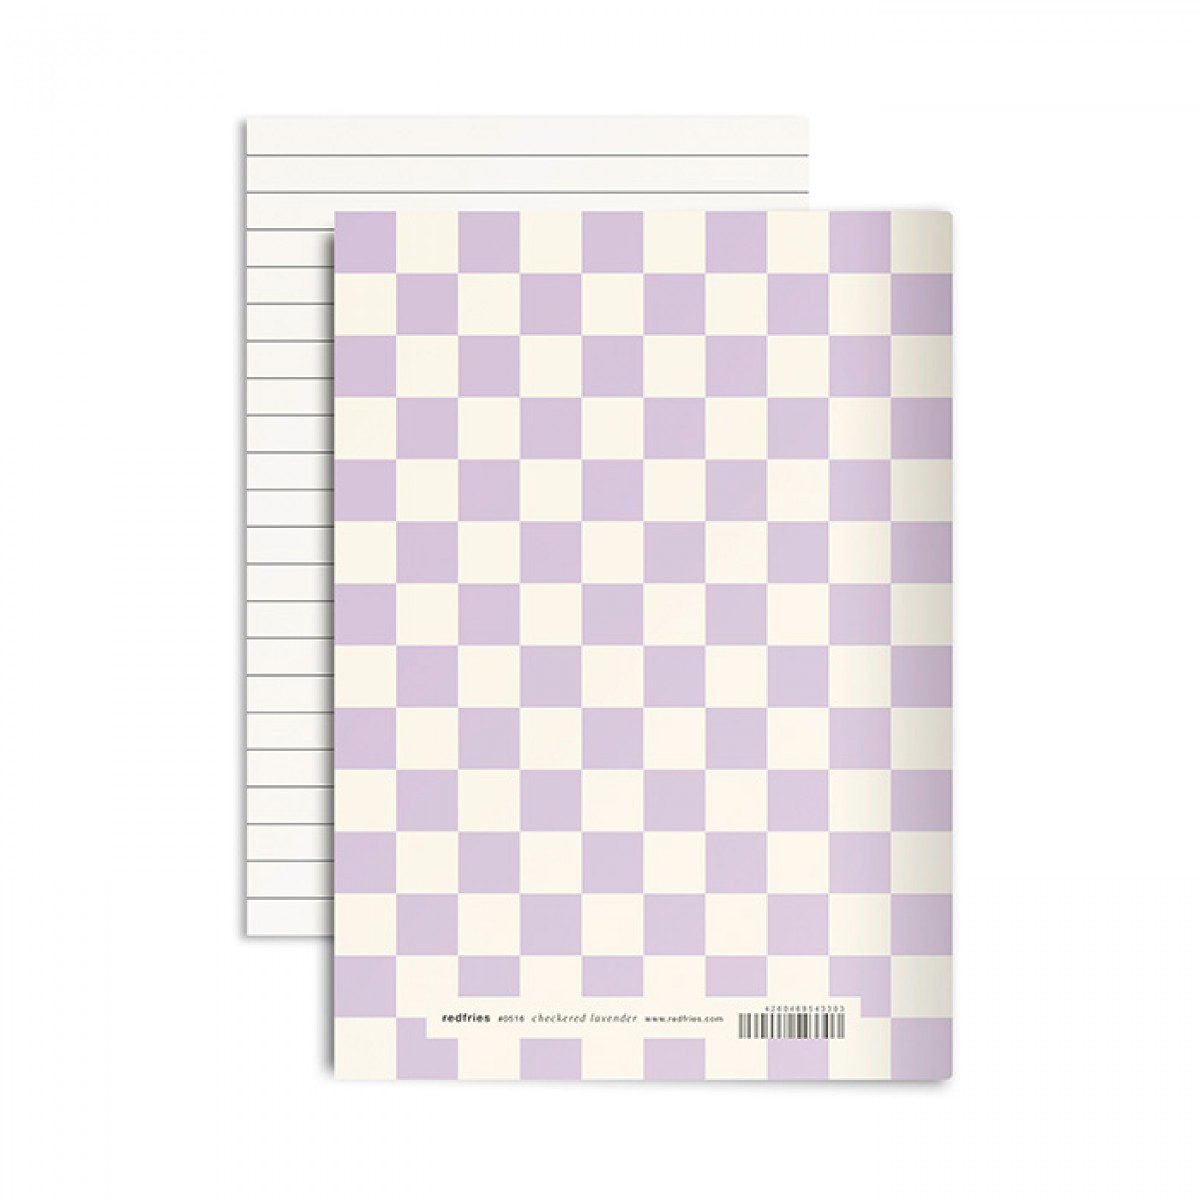 redfries checkered lavender – Notizheft DIN A5, 2 Stück